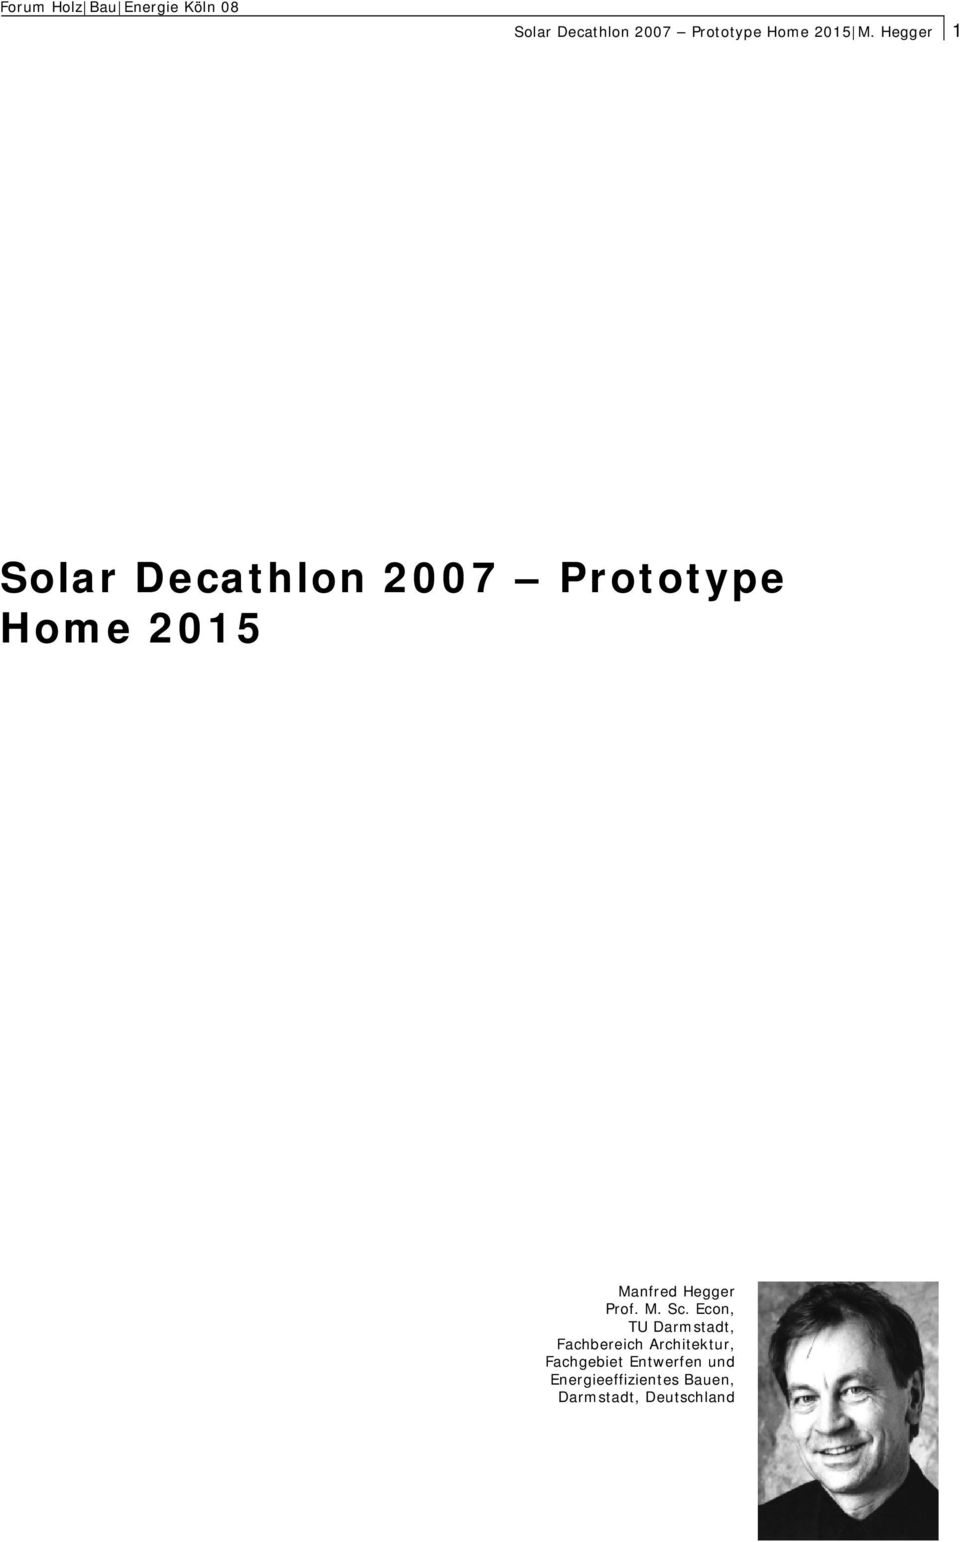 Hegger 1 Solar Decathlon 2007 Prototype Home 2015 Manfred Hegger